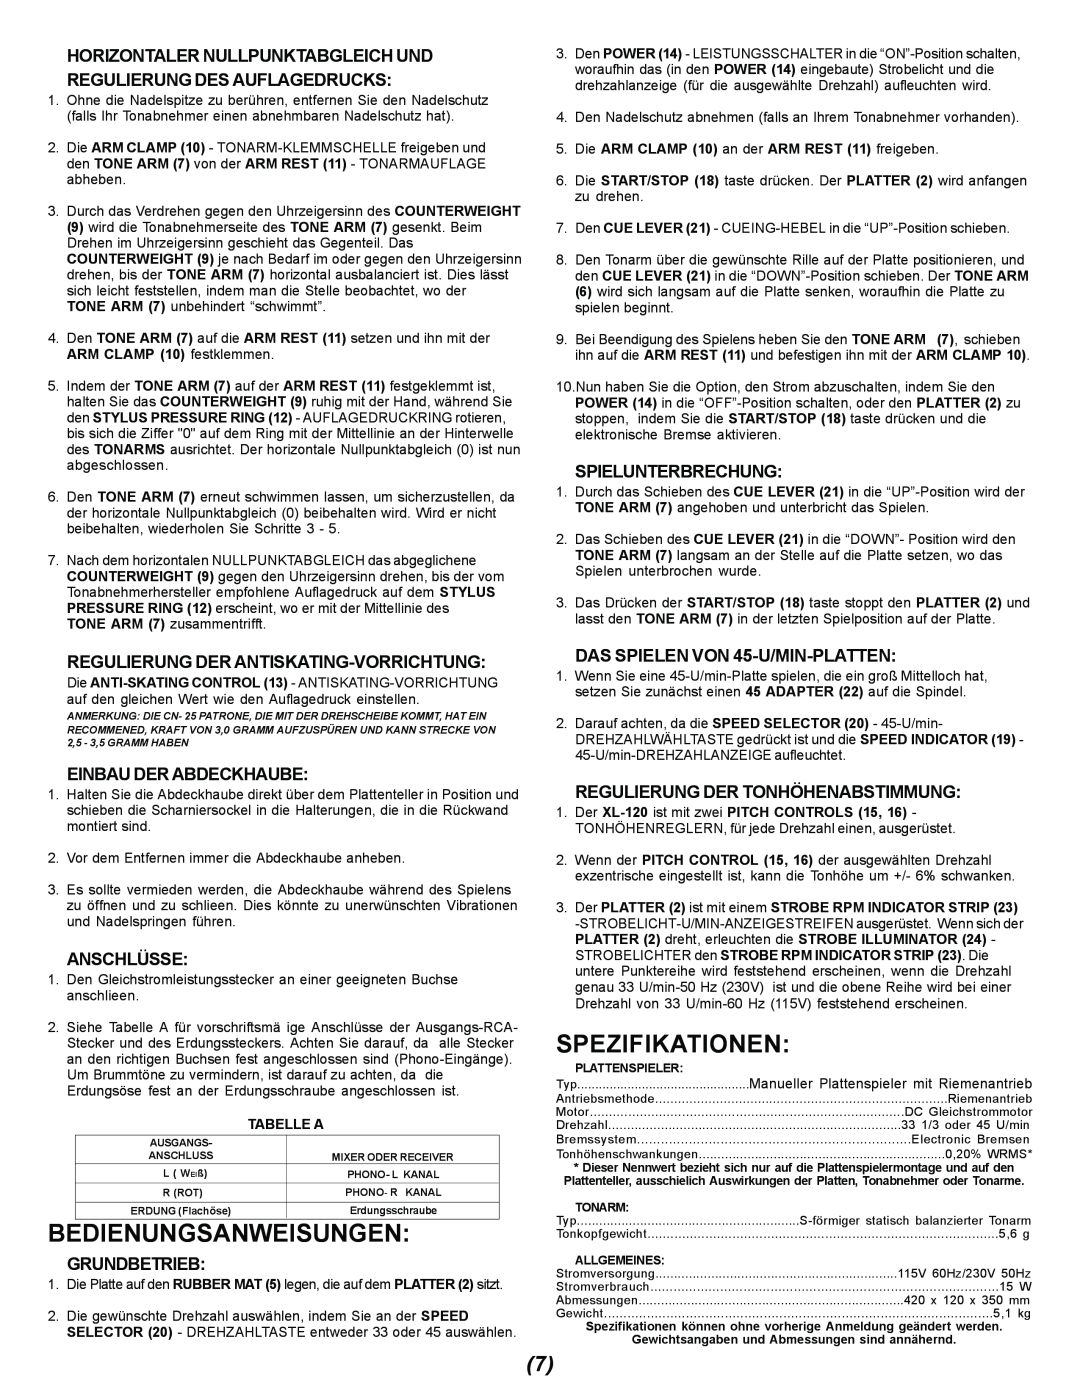 Gemini XL-120 Bedienungsanweisungen, Spezifikationen, Regulierung Der Antiskating-Vorrichtung, Einbau Der Abdeckhaube 